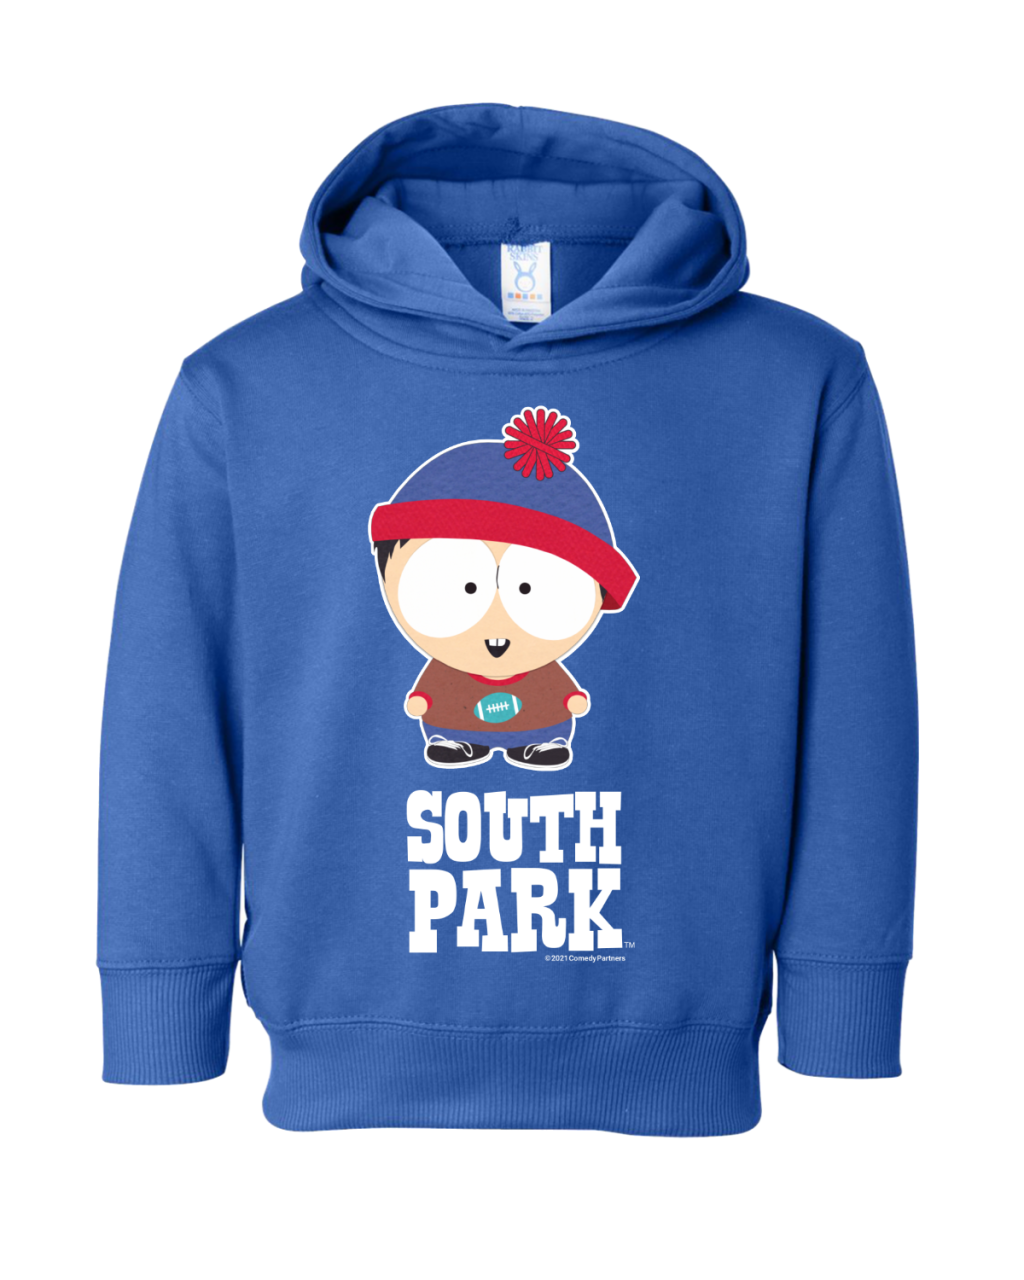 sp 3326 sp031 ry - South Park Merch